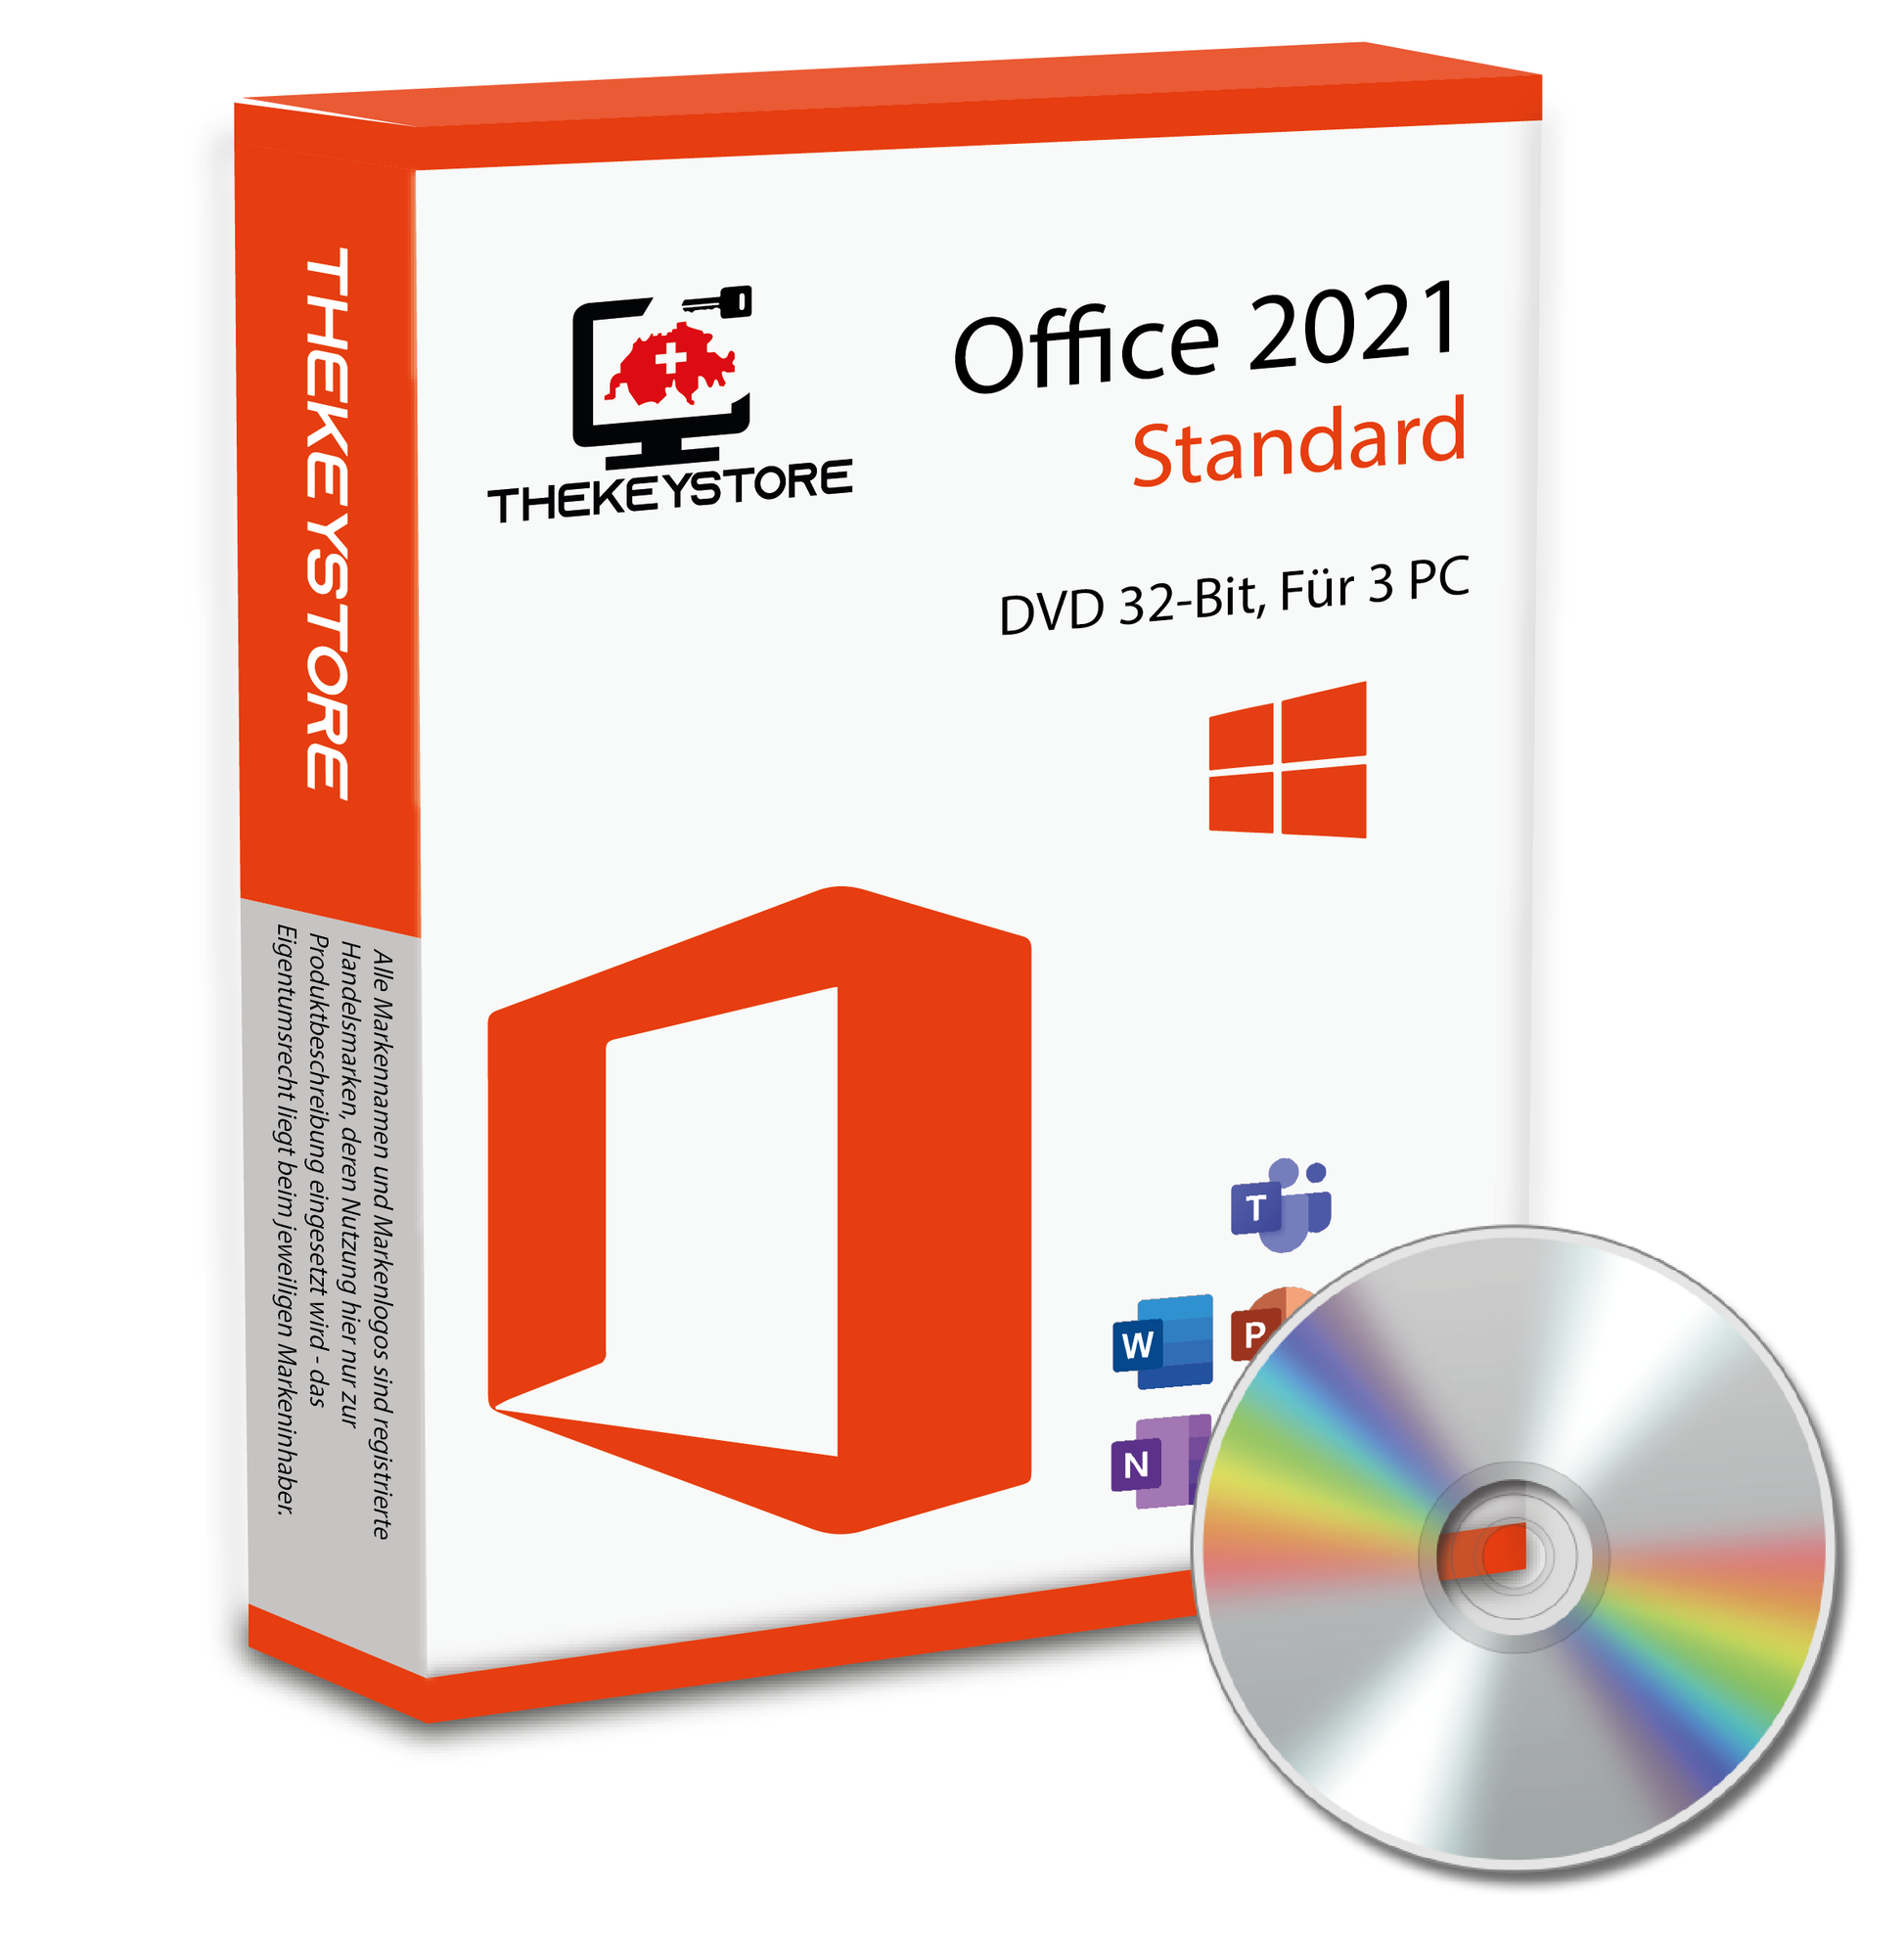 Microsoft Office 2021 Standard - Für 3 PC - TheKeyStore Schweiz